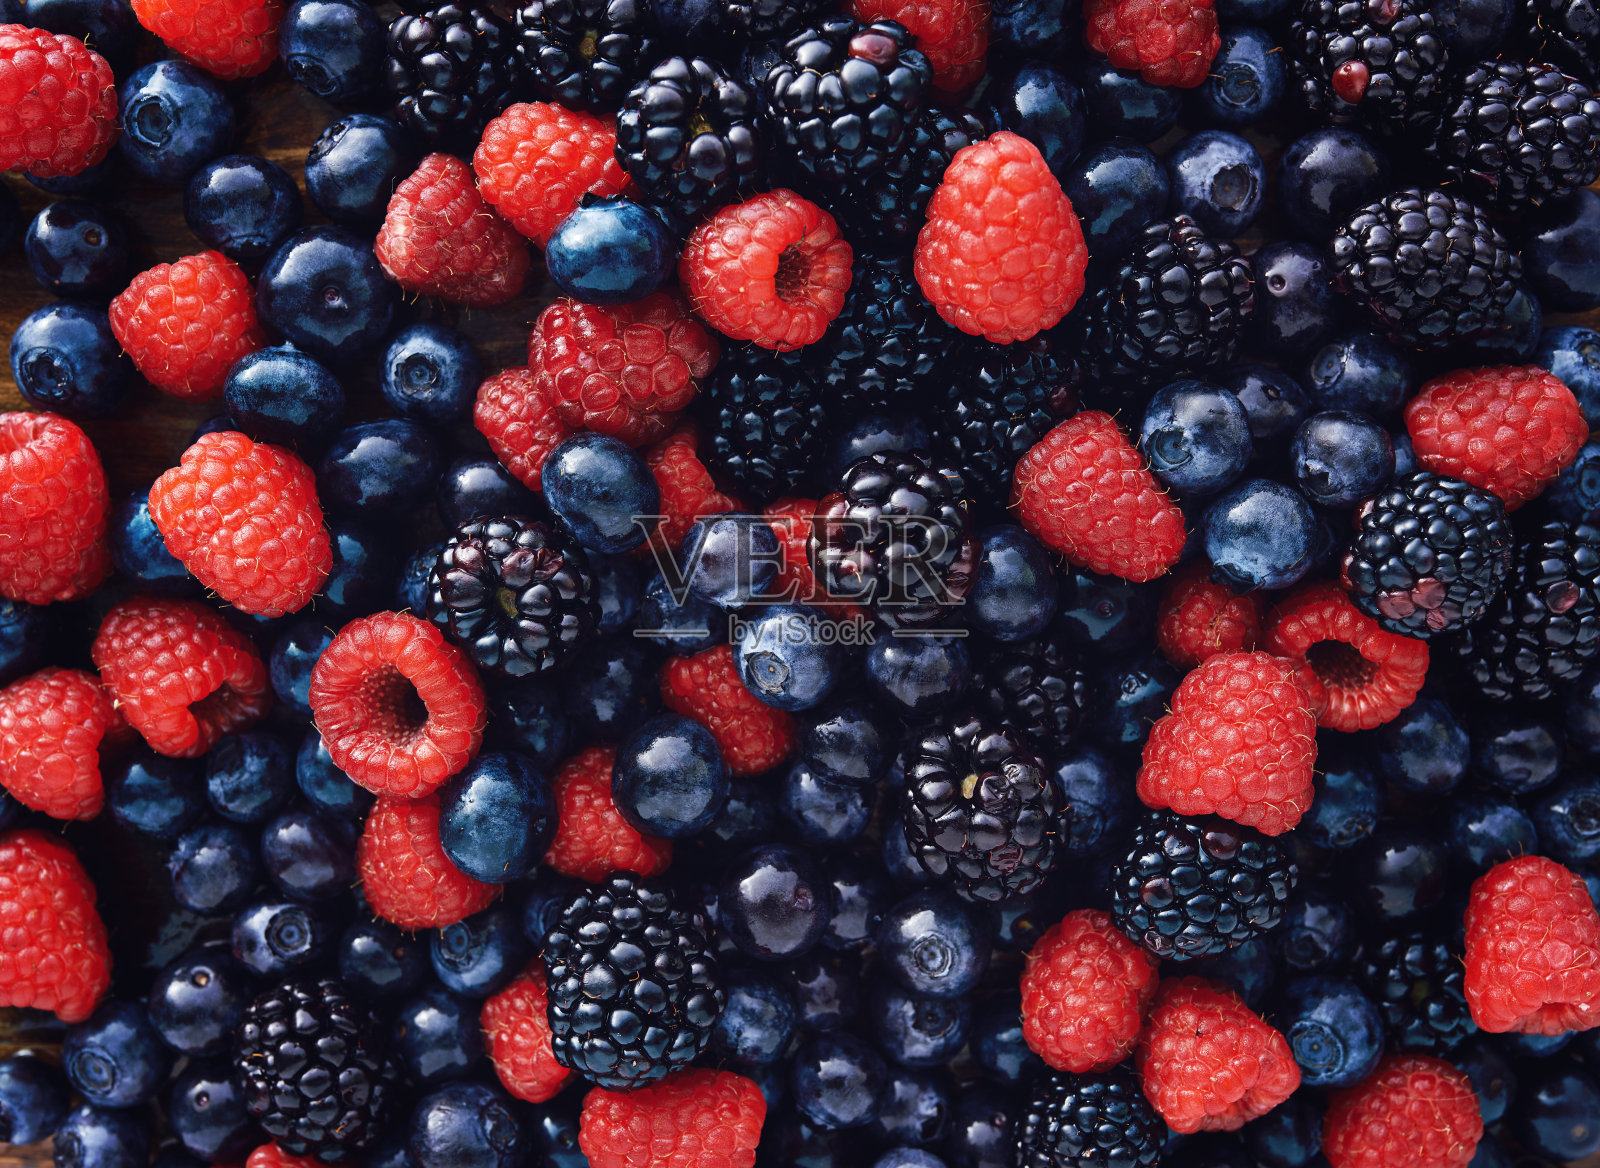 蓝莓、覆盆子和黑莓都是自上而下的照片摄影图片